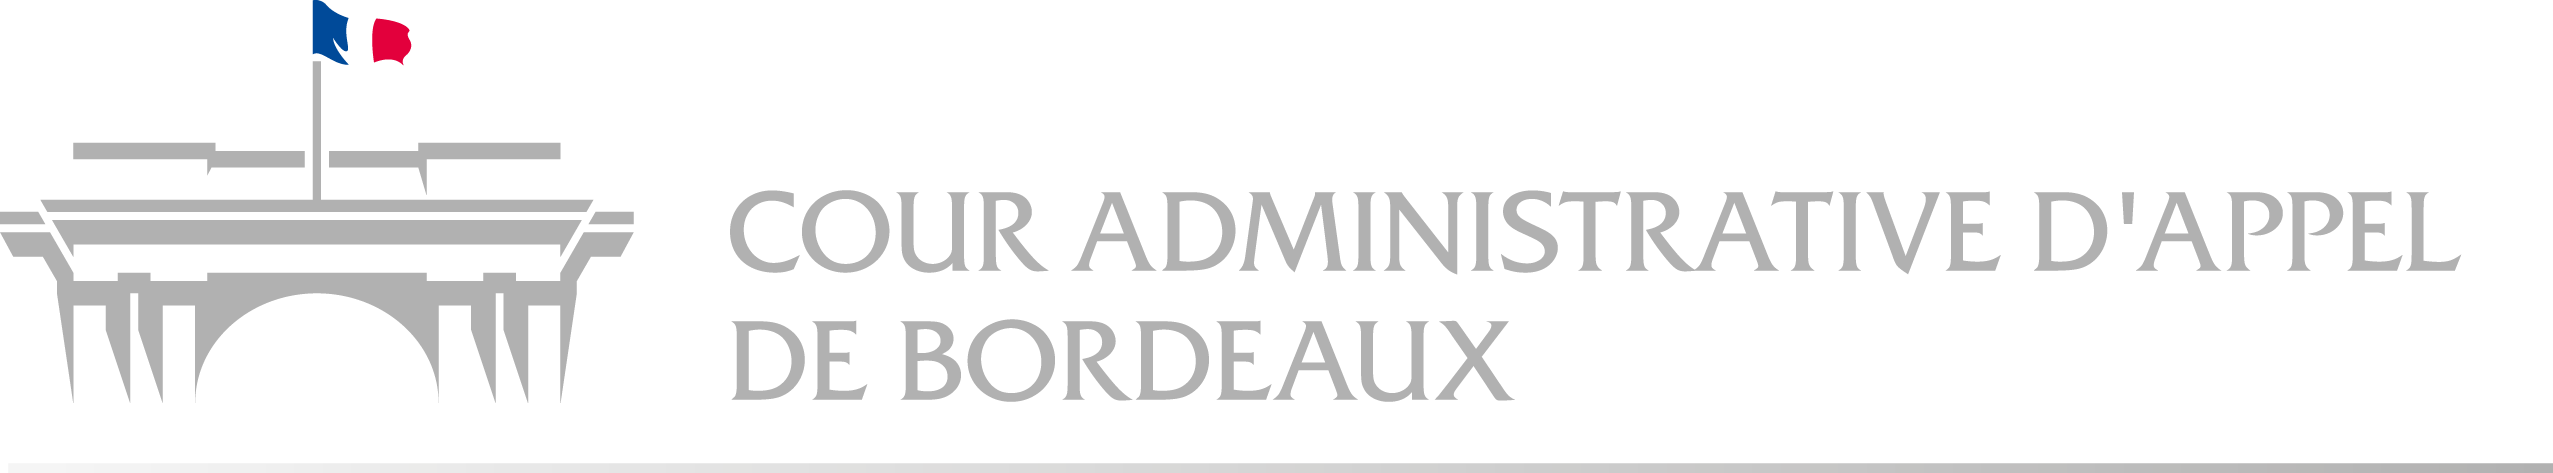 Cour administrative d'appel de Bordeaux - Retour à l'accueil